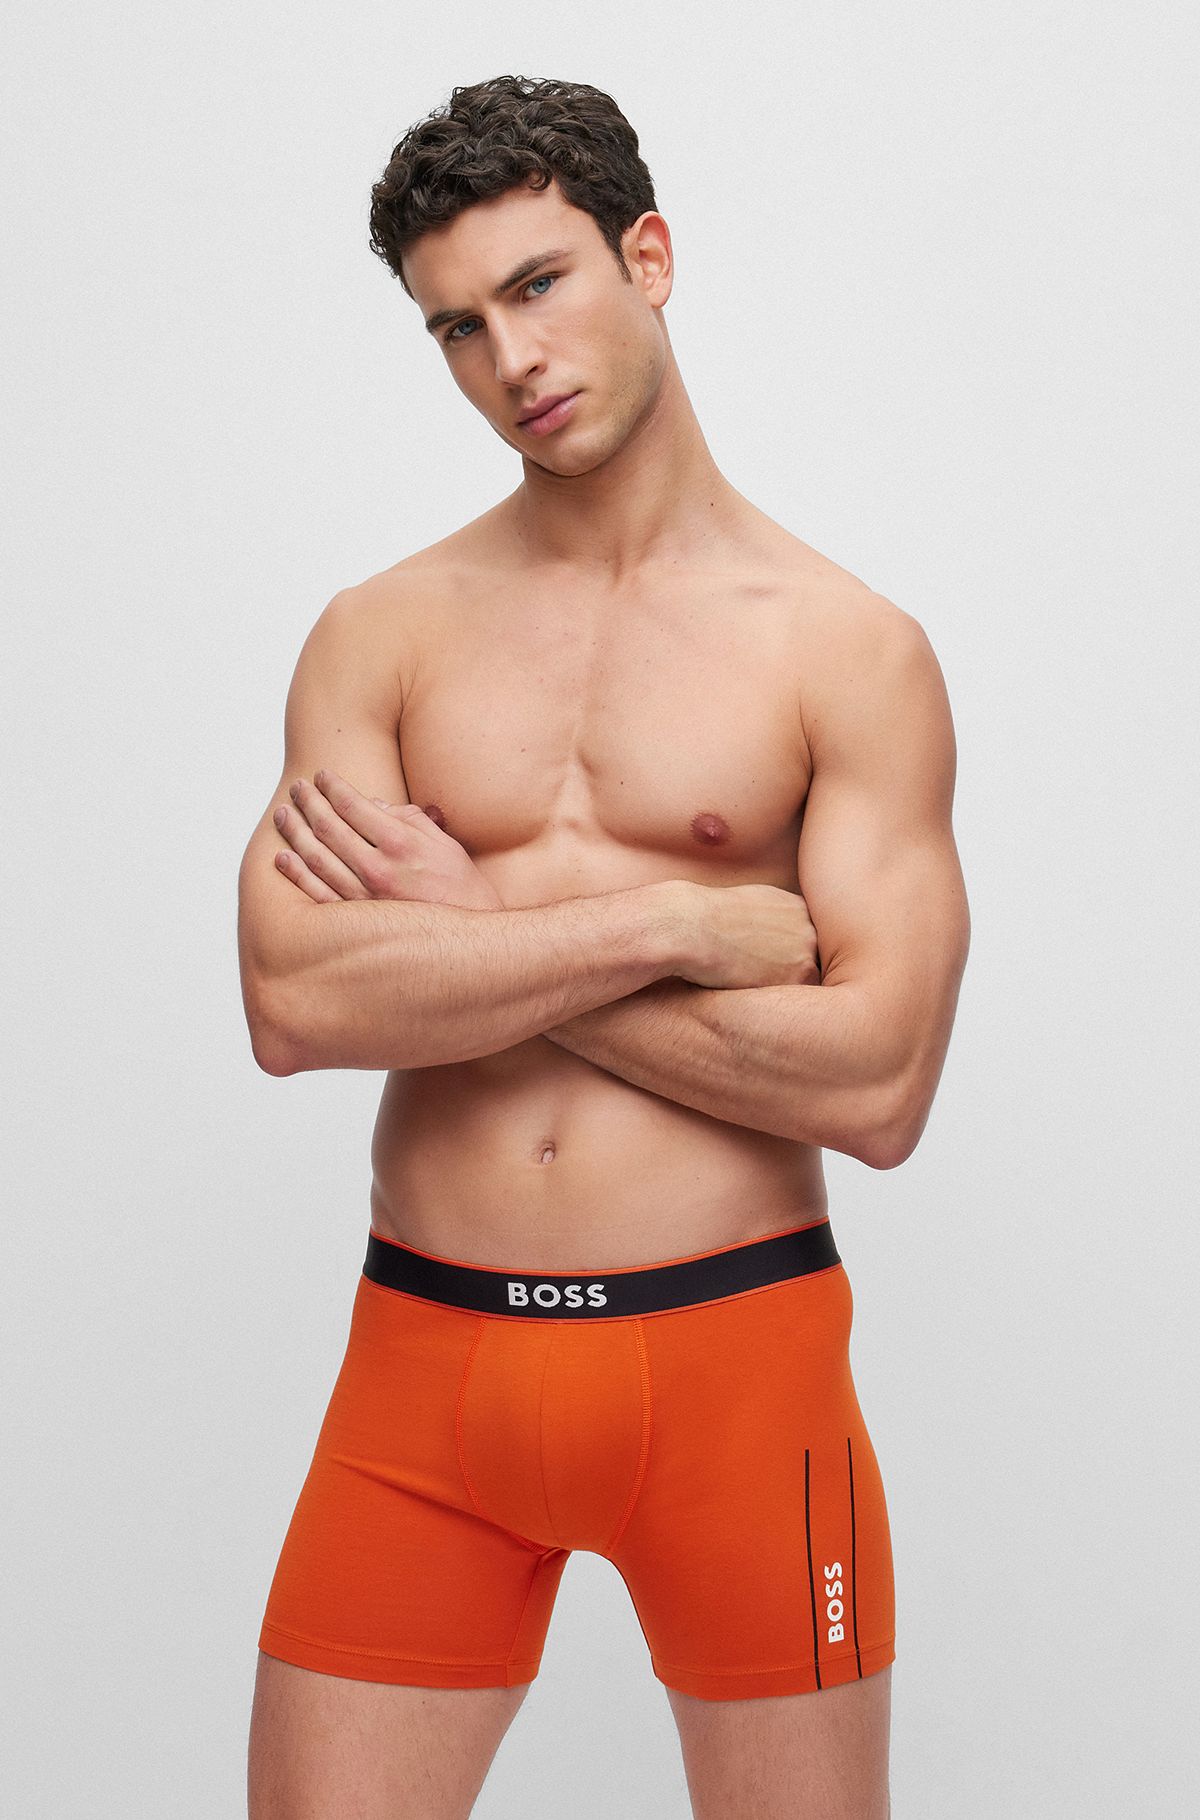 Underwear and Nightwear in Orange by HUGO BOSS | Men